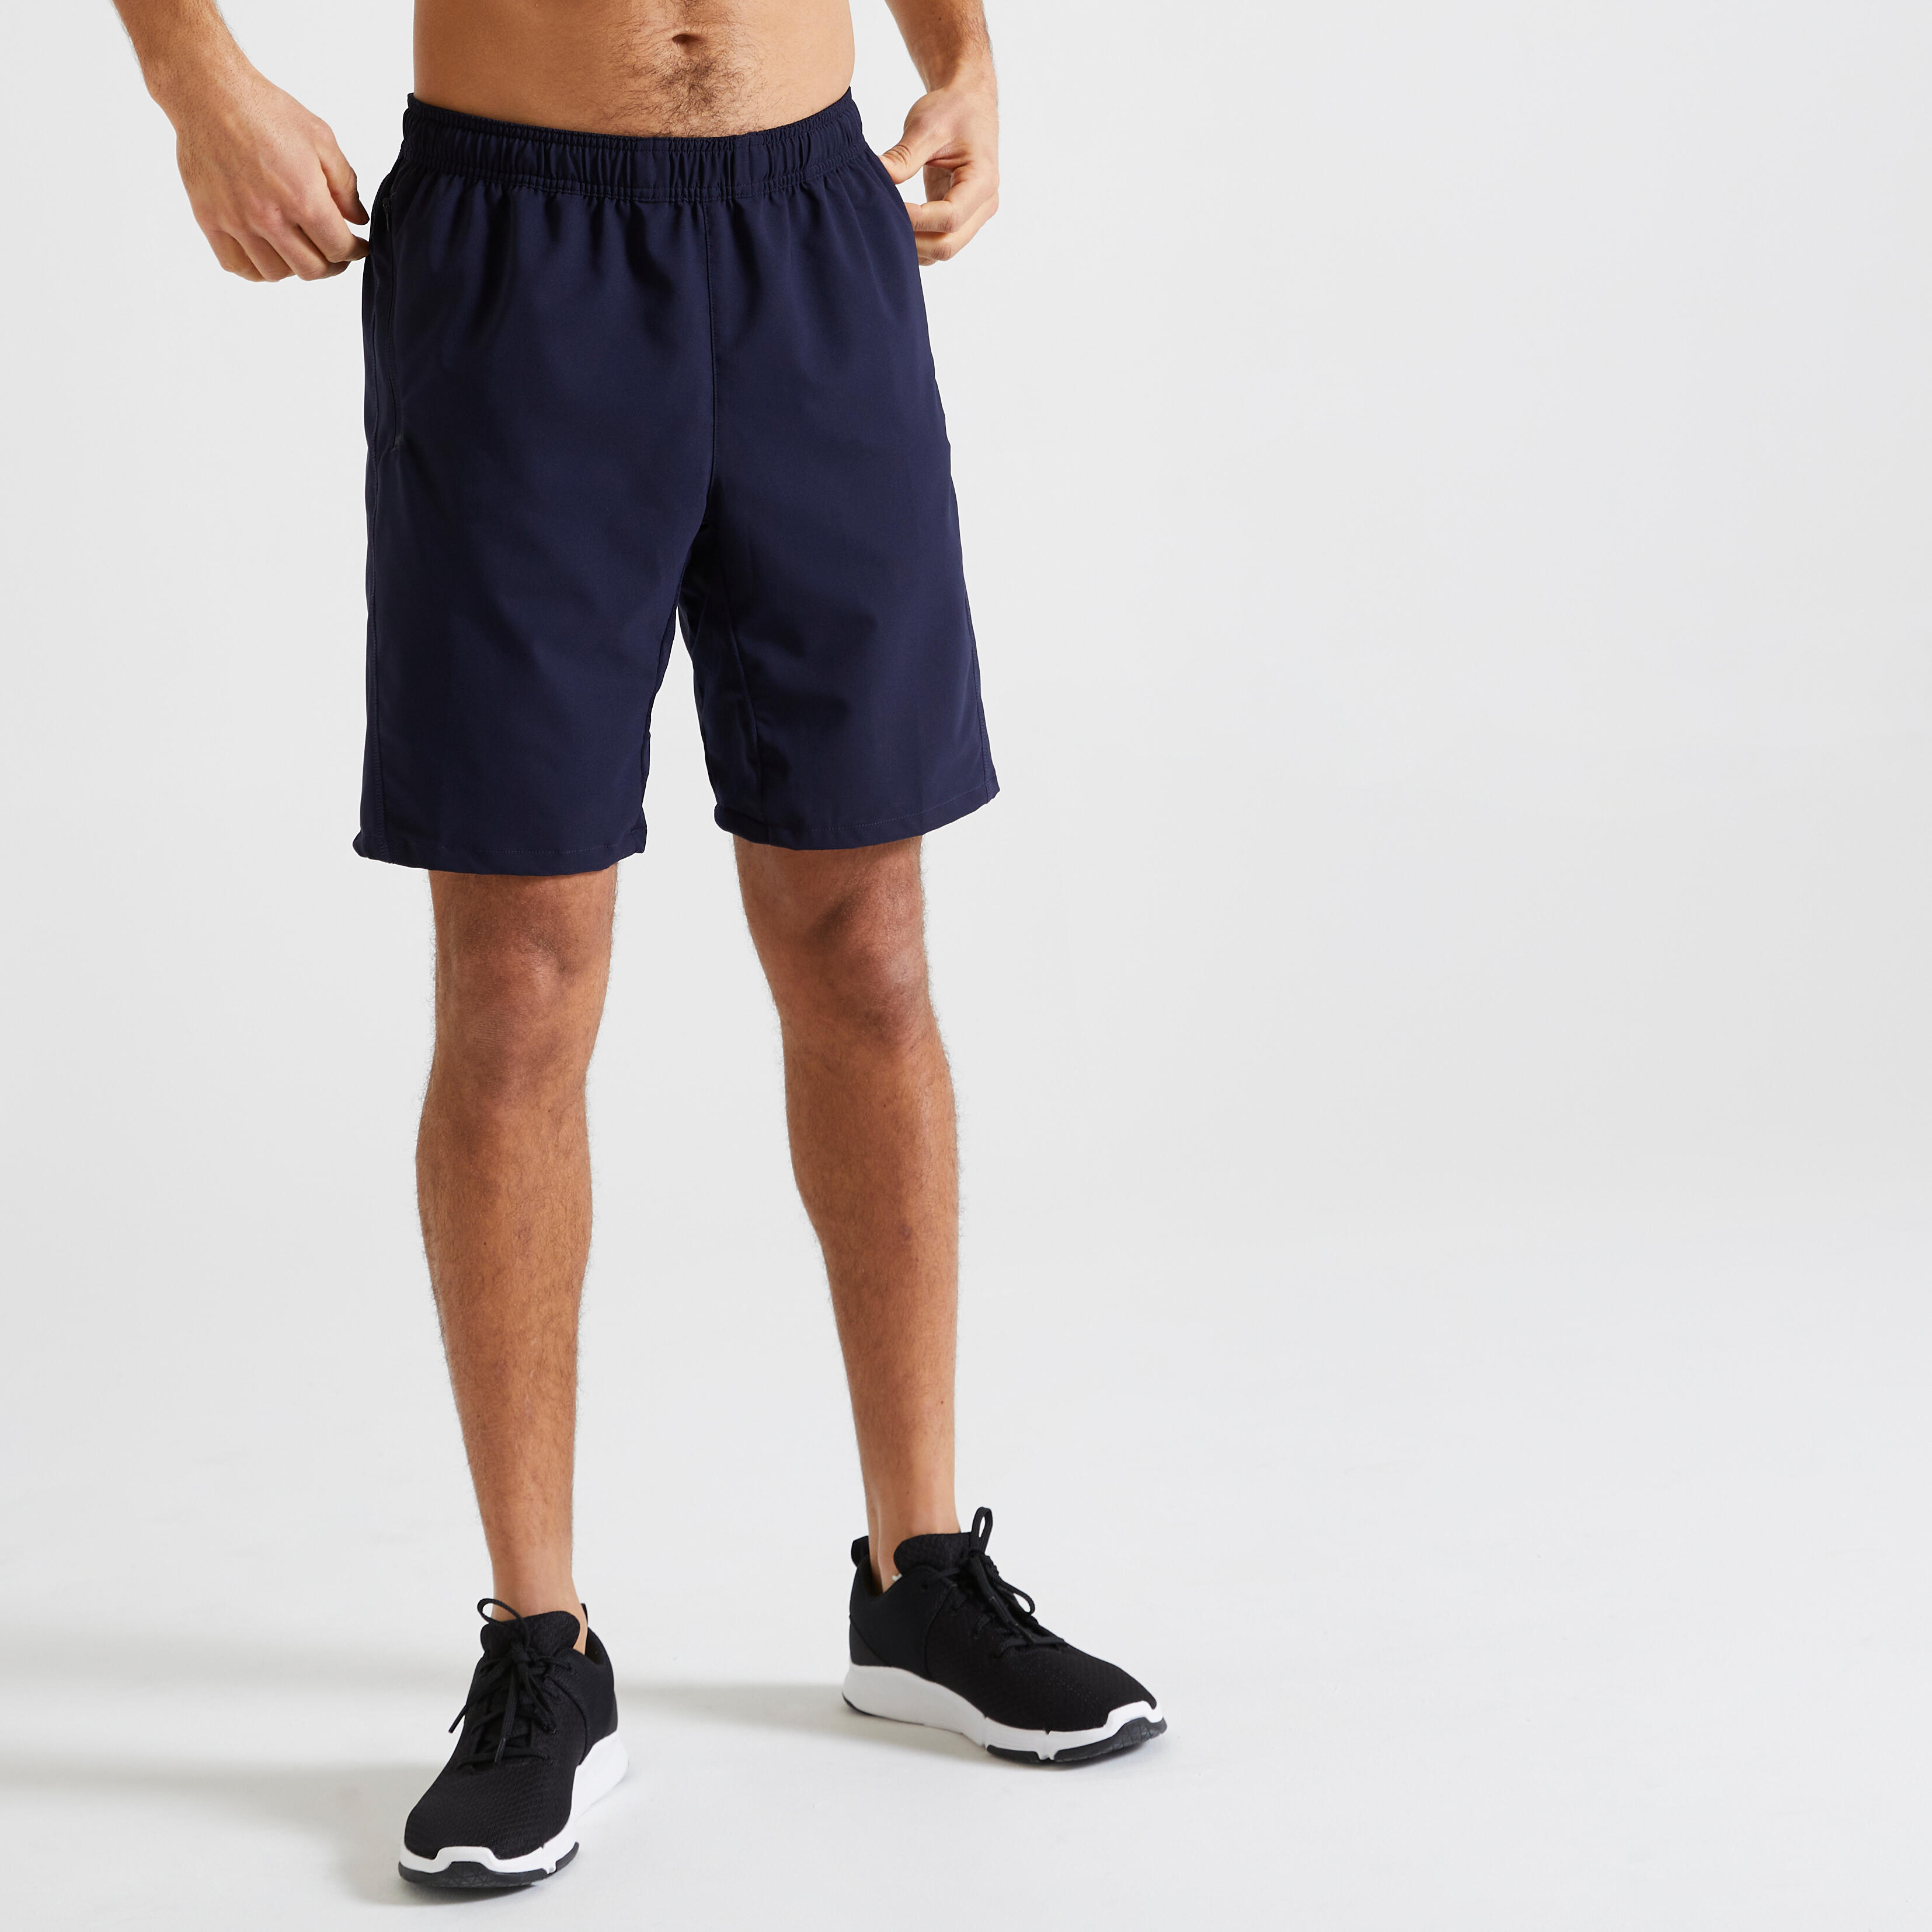 Pantalon scurt 120 Fitness respirant cu buzunare cu fermoar Bleumarin Bărbați La Oferta Online decathlon imagine La Oferta Online